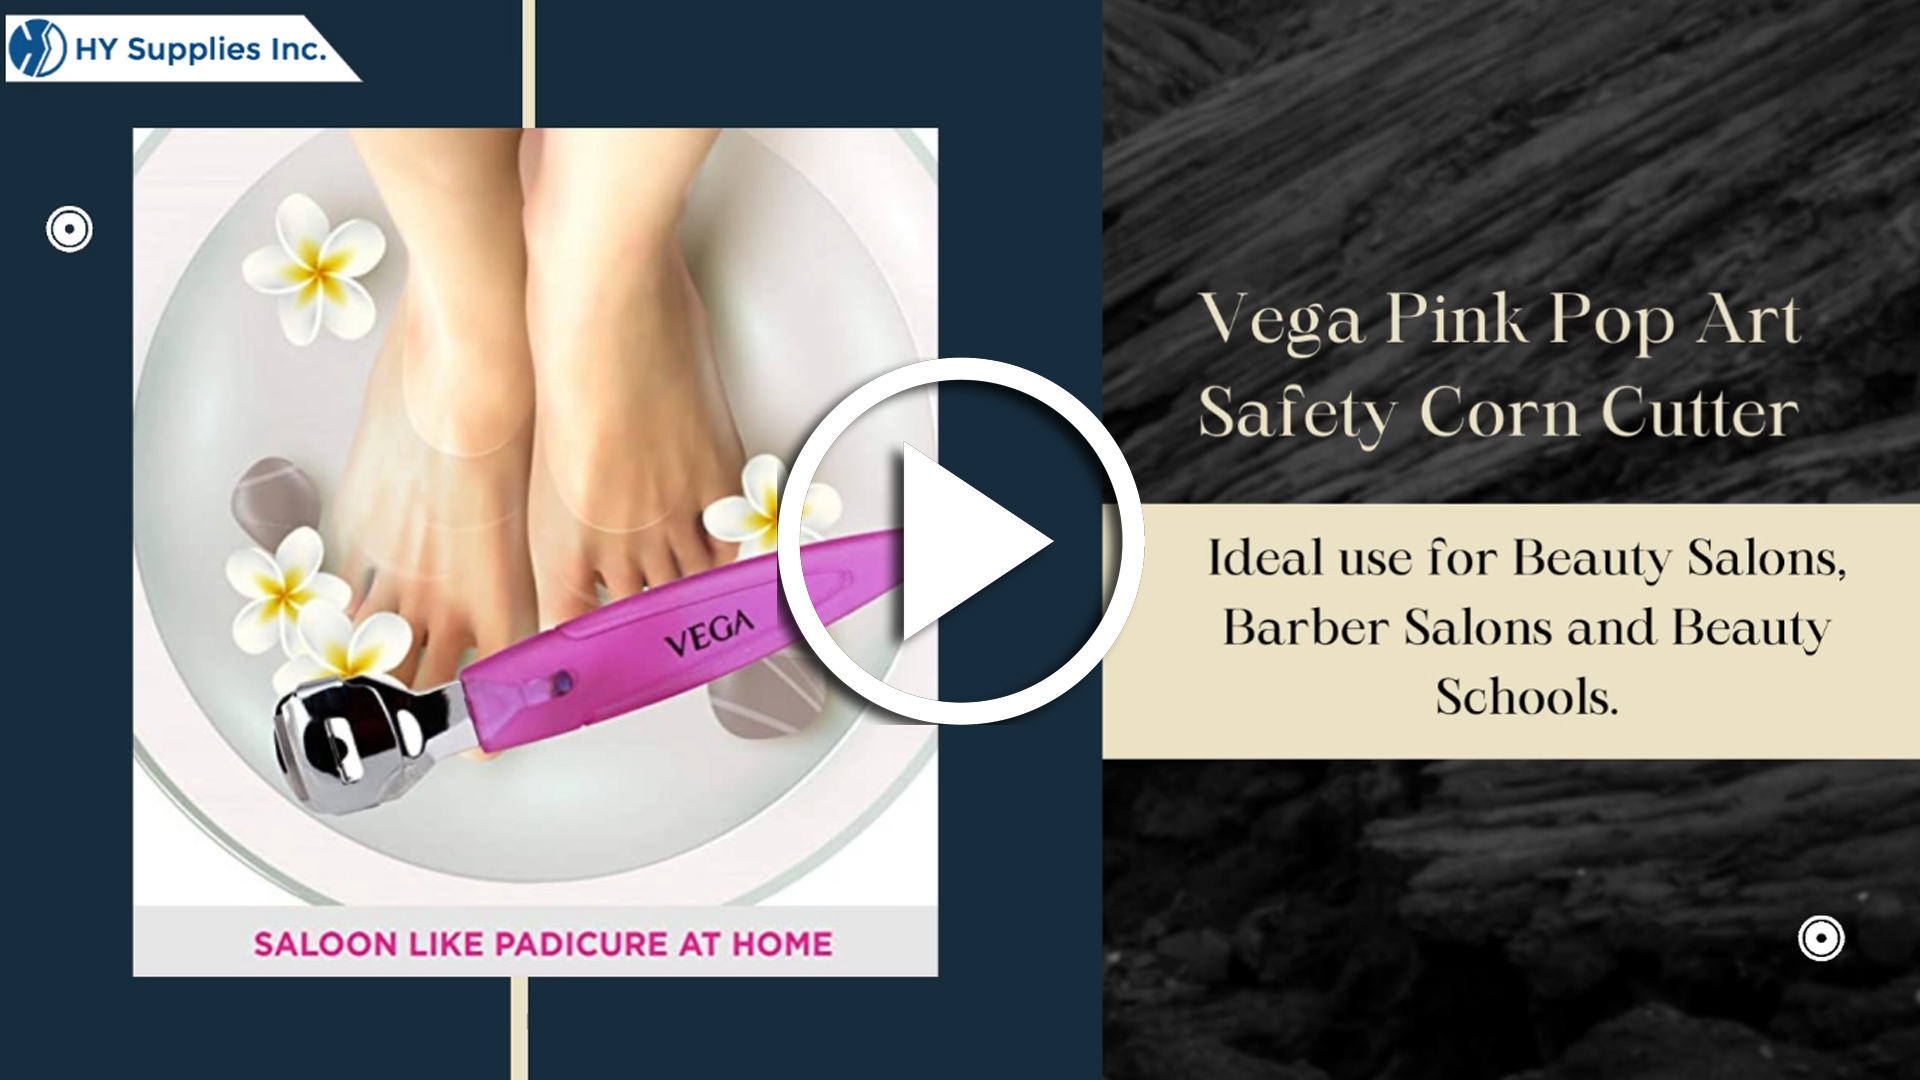 Vega Pink Pop Art Safety Corn Cutter